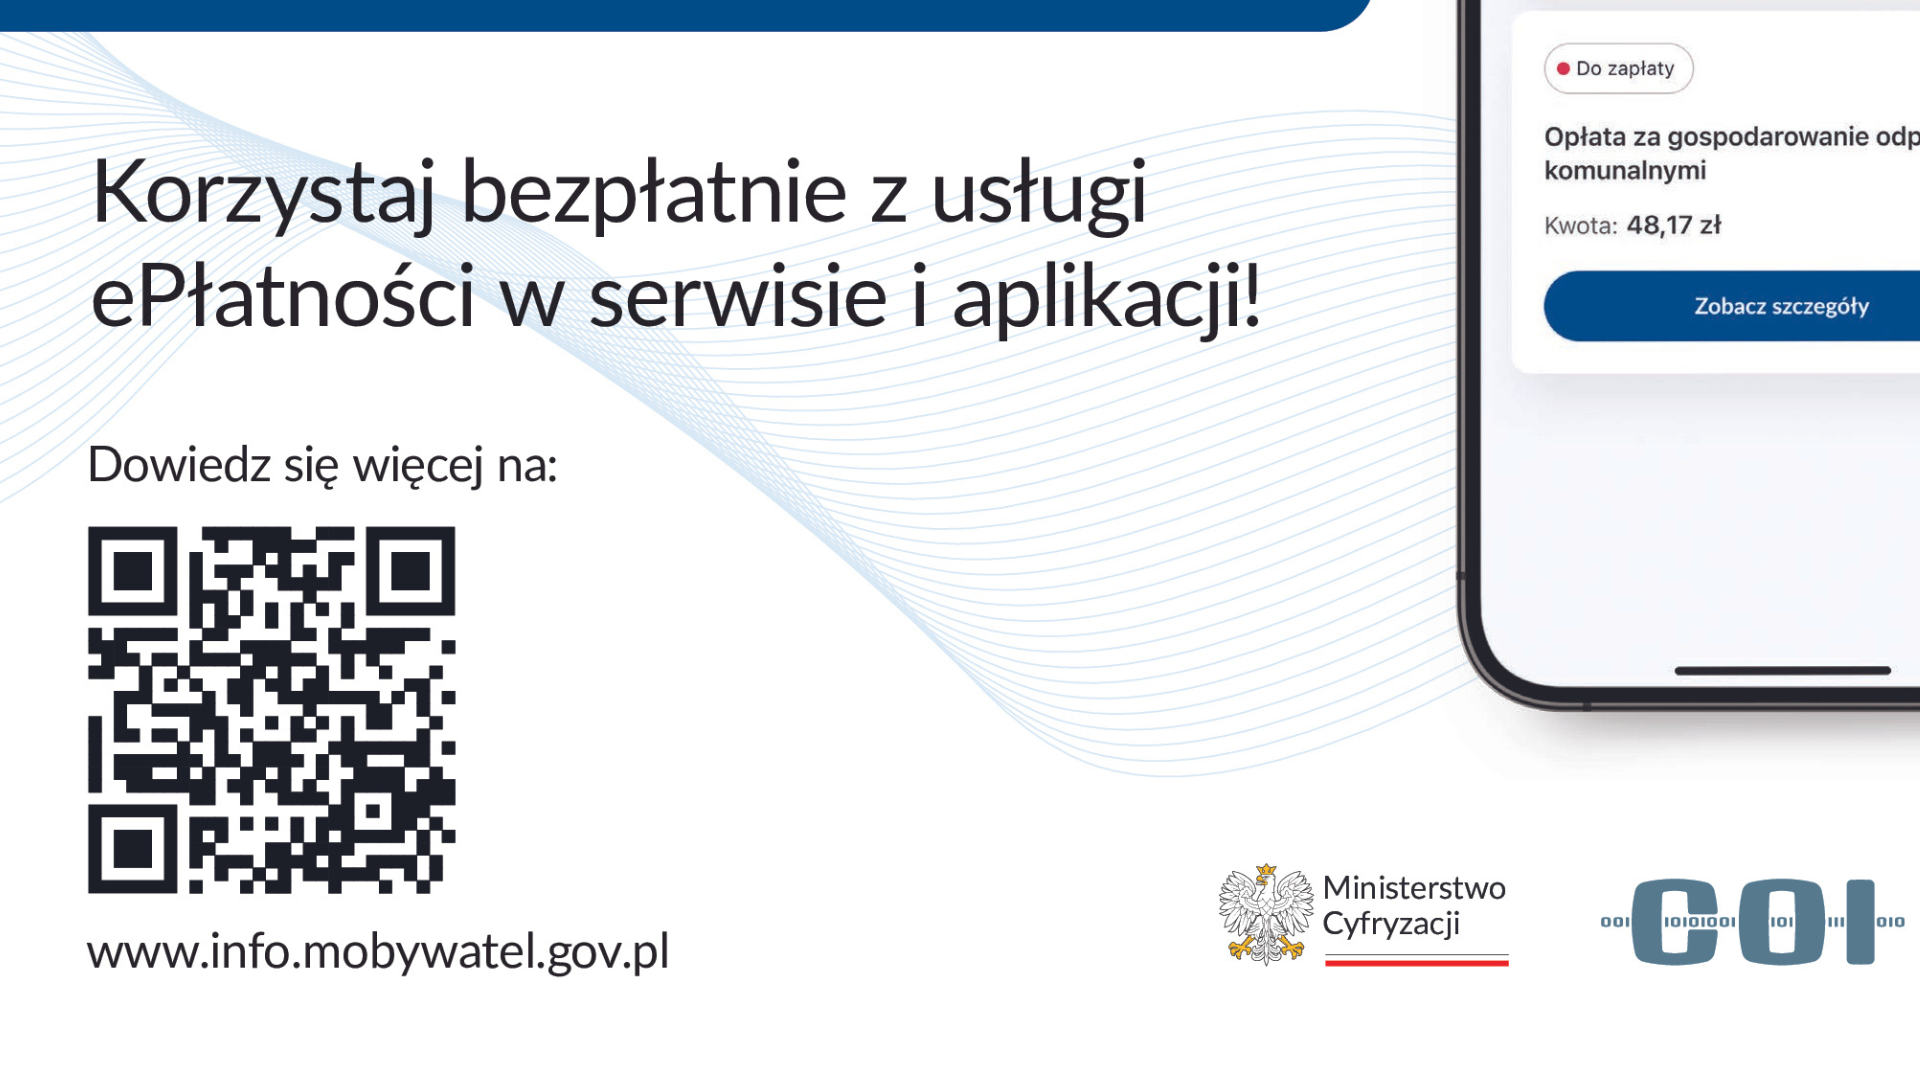 Mieszkańcy Poznania jako jedni z pierwszych korzystają z Platformy ePłatności Centralnego Ośrodka Informatyki. Mogą bezprowizyjnie opłacić podatek od nieruchomości i opłatę za gospodarowanie odpadami komunalnymi za pomocą popularnego BLIKa. - grafika artykułu